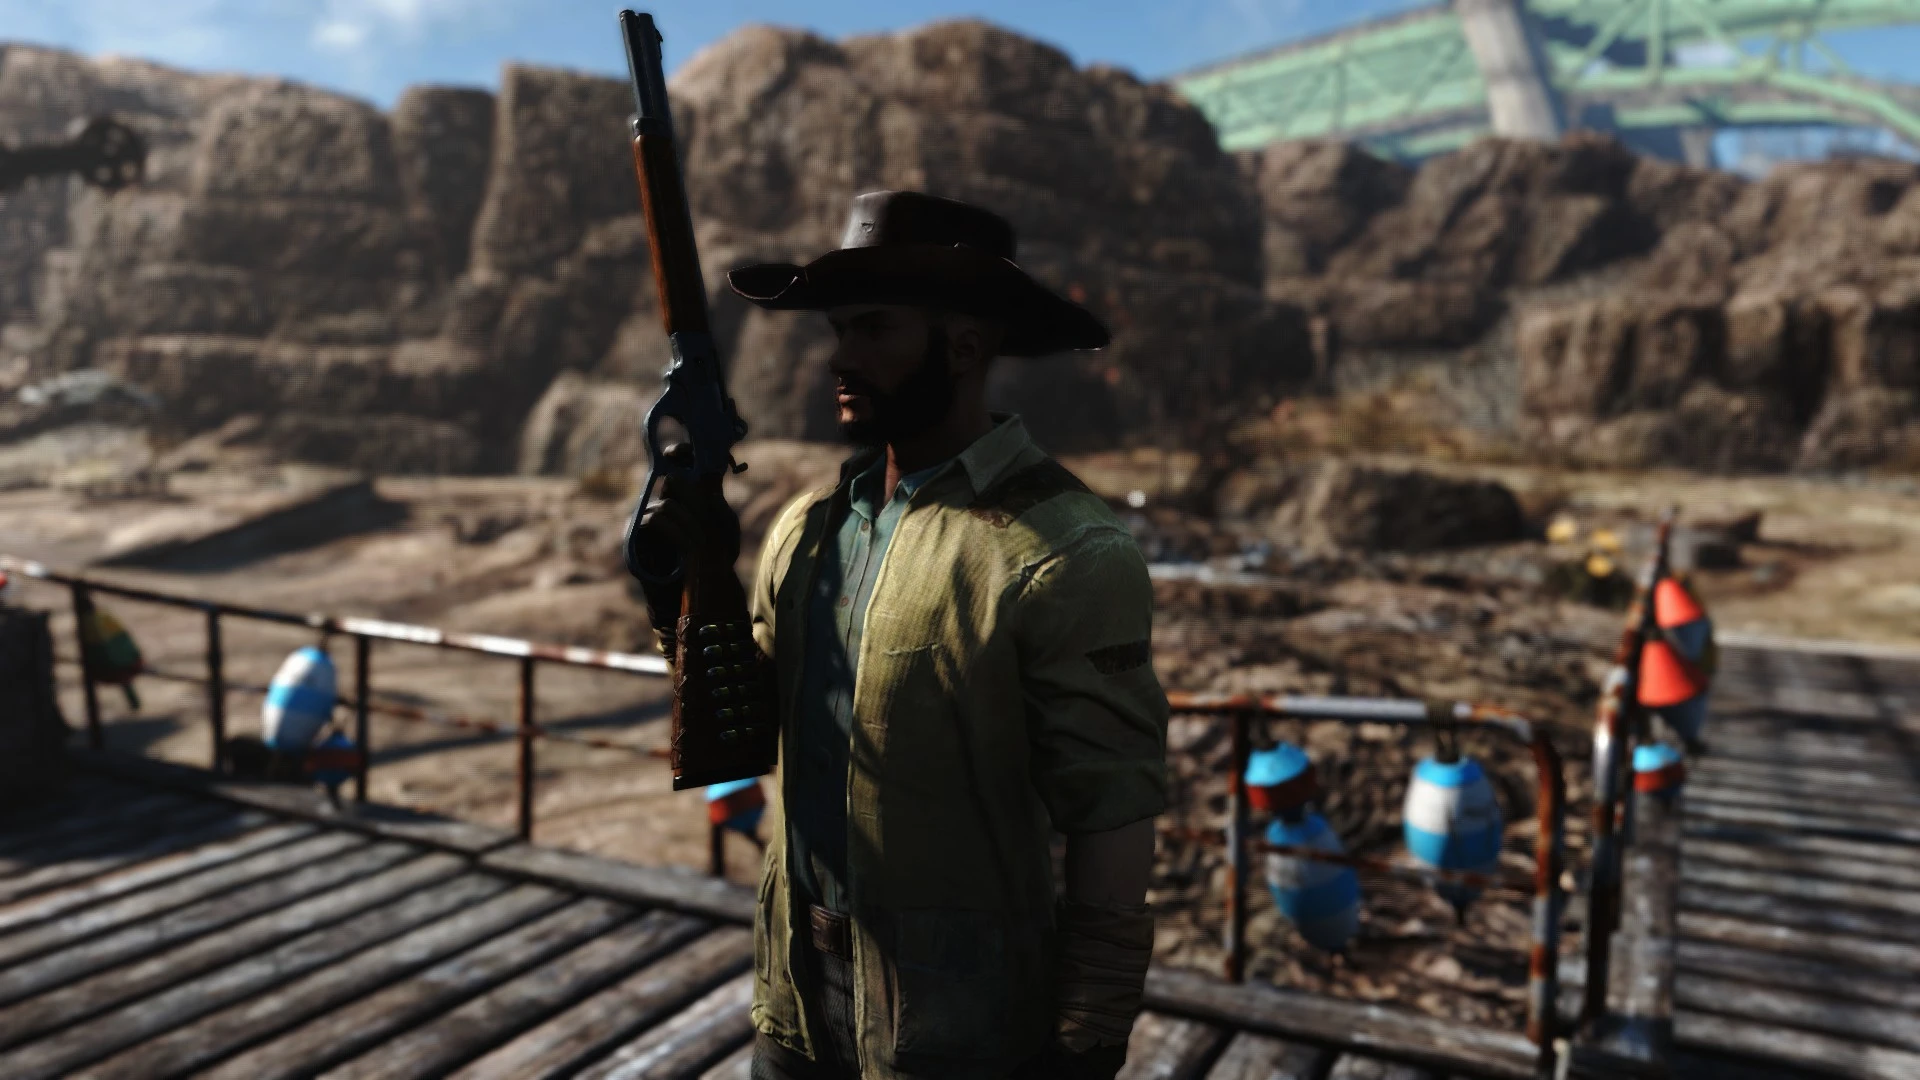 Fallout ковбой. Fallout 4 Cowboy hat. Fallout 4 Cowboy hat Mod. Одежда ковбоя Fallout 4. Фоллаут 4 ковбойские шляпы.